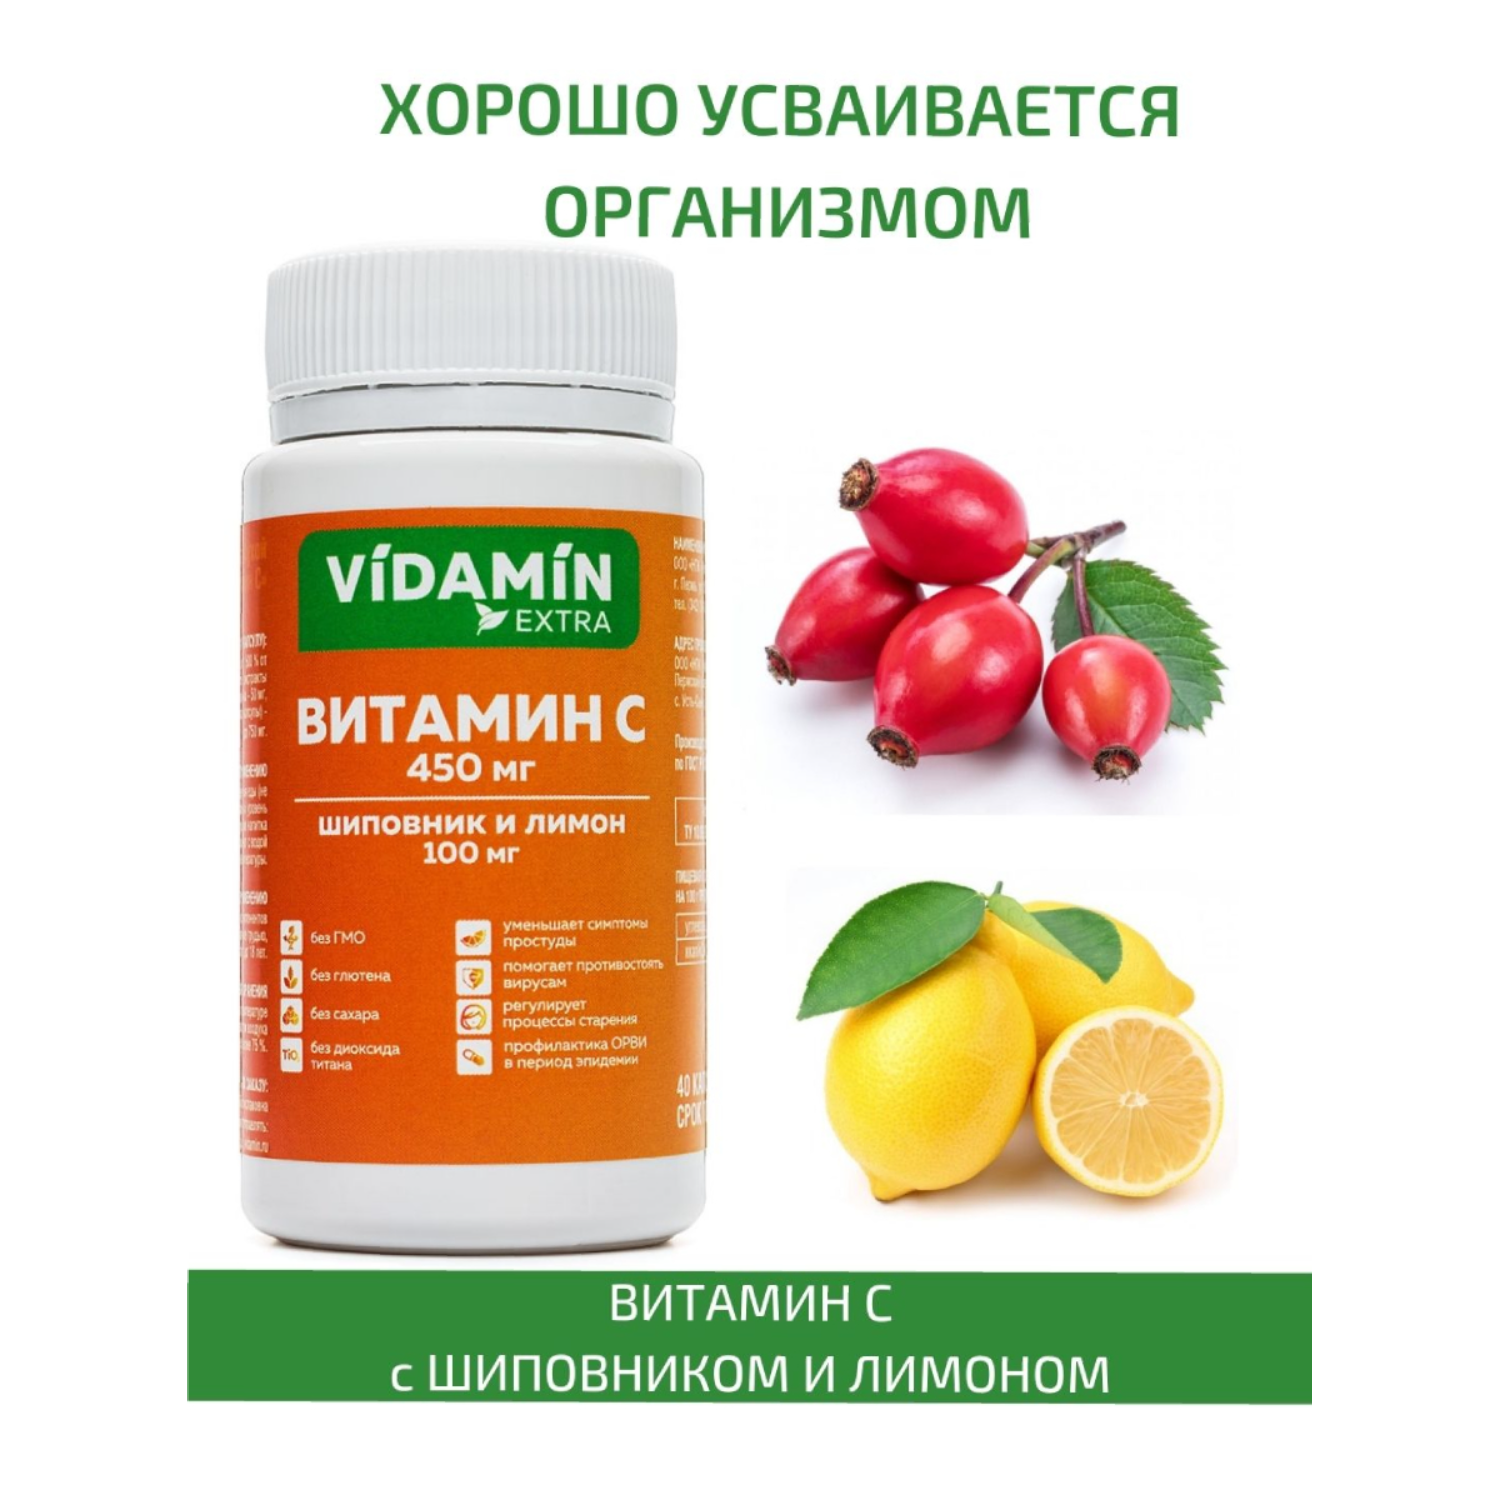 Vitamin extra. Витамин с с биофлавоноидами. Что такое витамины. Набор витаминов. Витамины Экстра.